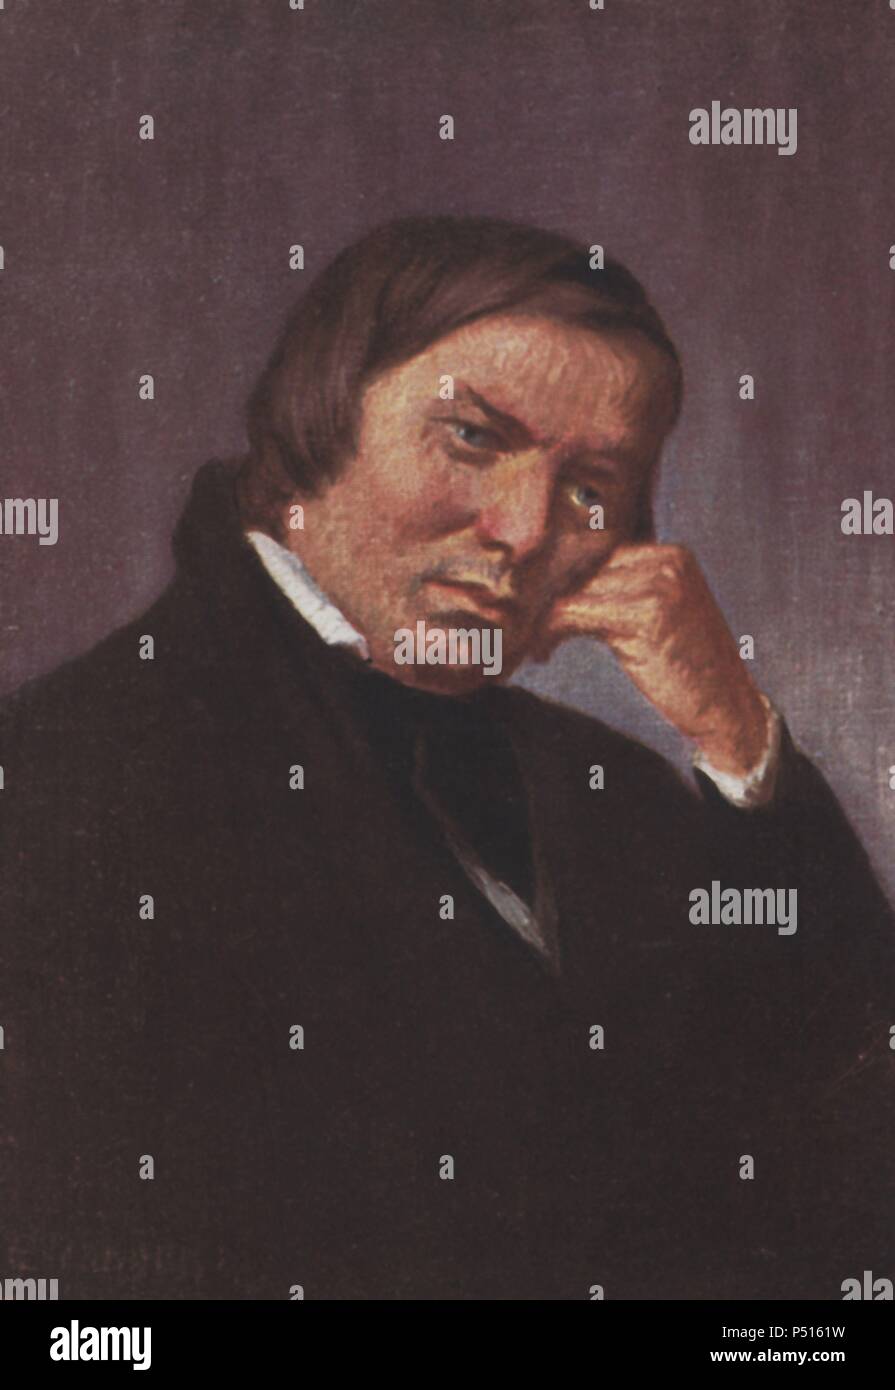 Robert Alexander Schumann (Zwickau, 1810-Endenich, 1856). Compositor y pianista alemán. Stock Photo